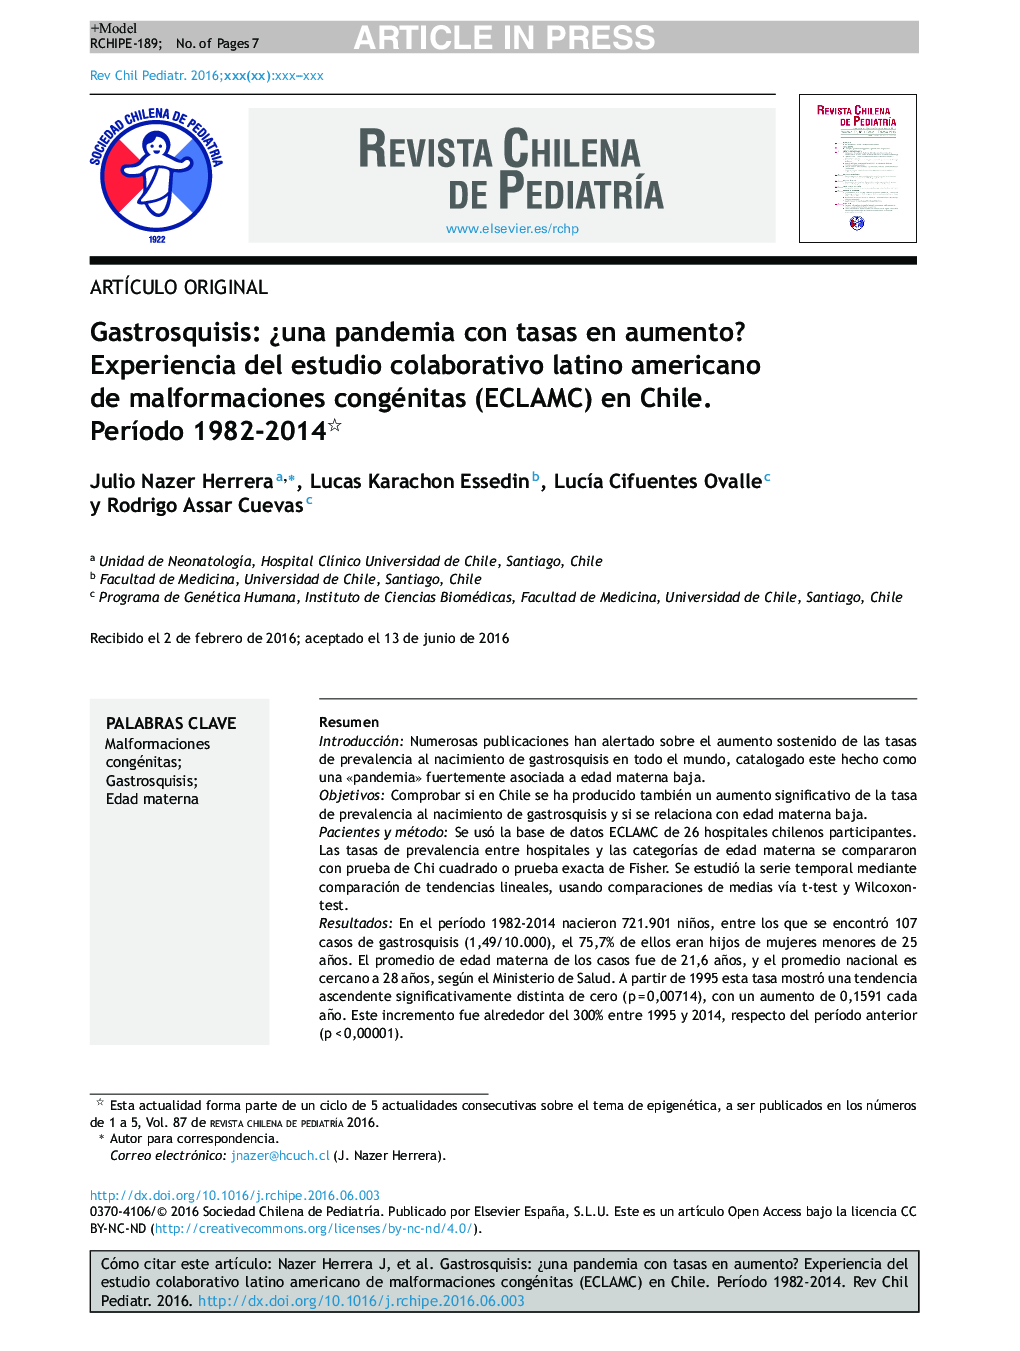 Gastrosquisis: Â¿una pandemia con tasas en aumento? Experiencia del estudio colaborativo latino americano de malformaciones congénitas (ECLAMC) en Chile. PerÃ­odo 1982-2014